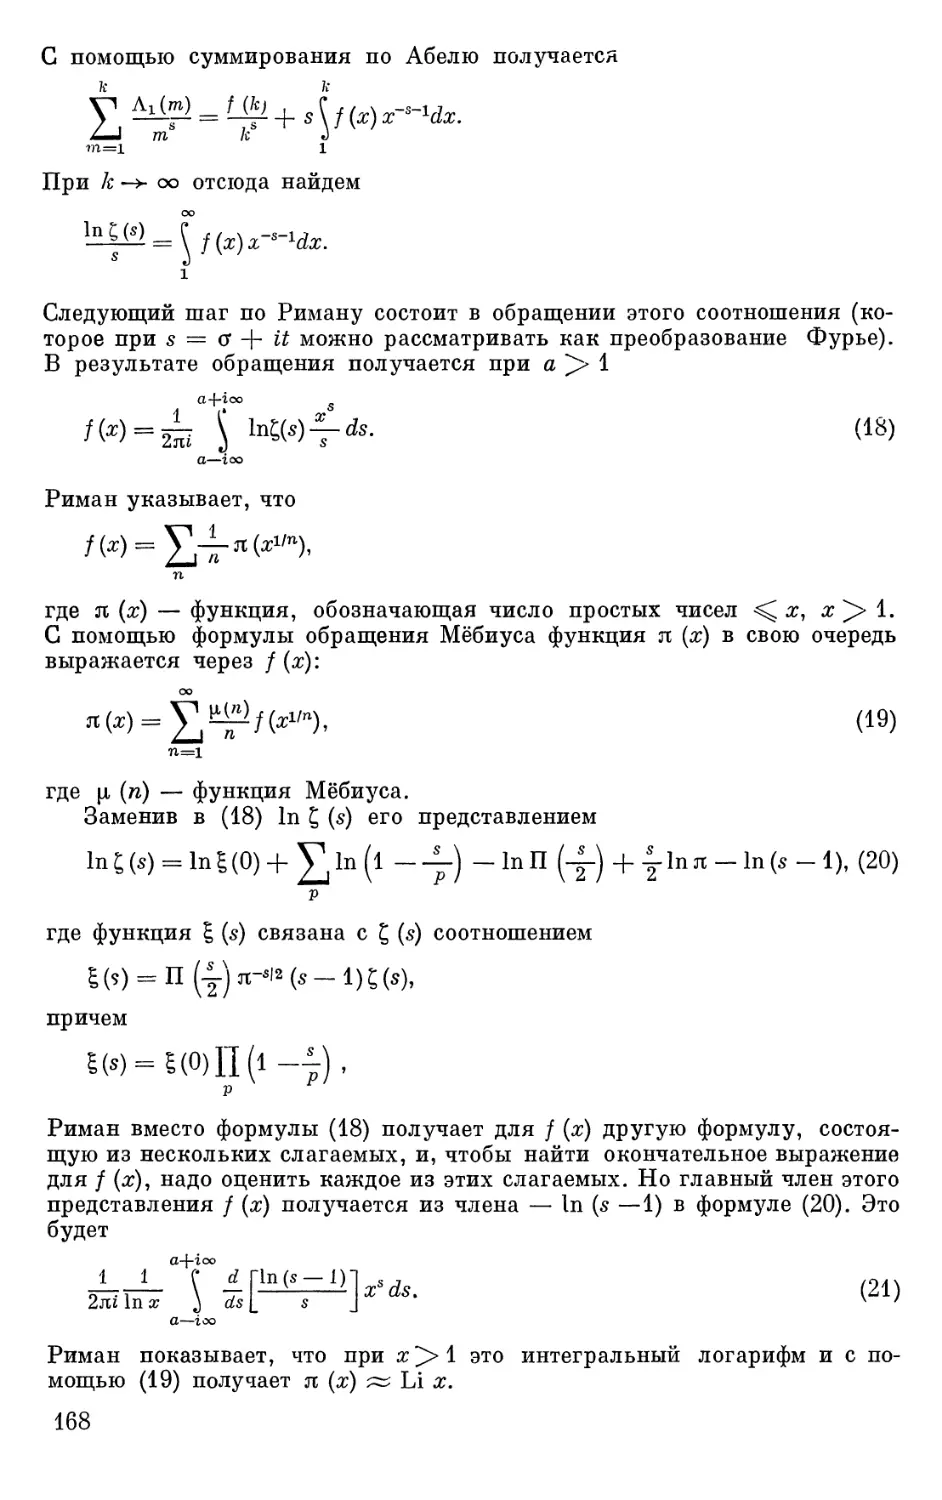 Доказательство асимптотического закона распределения простых чисел